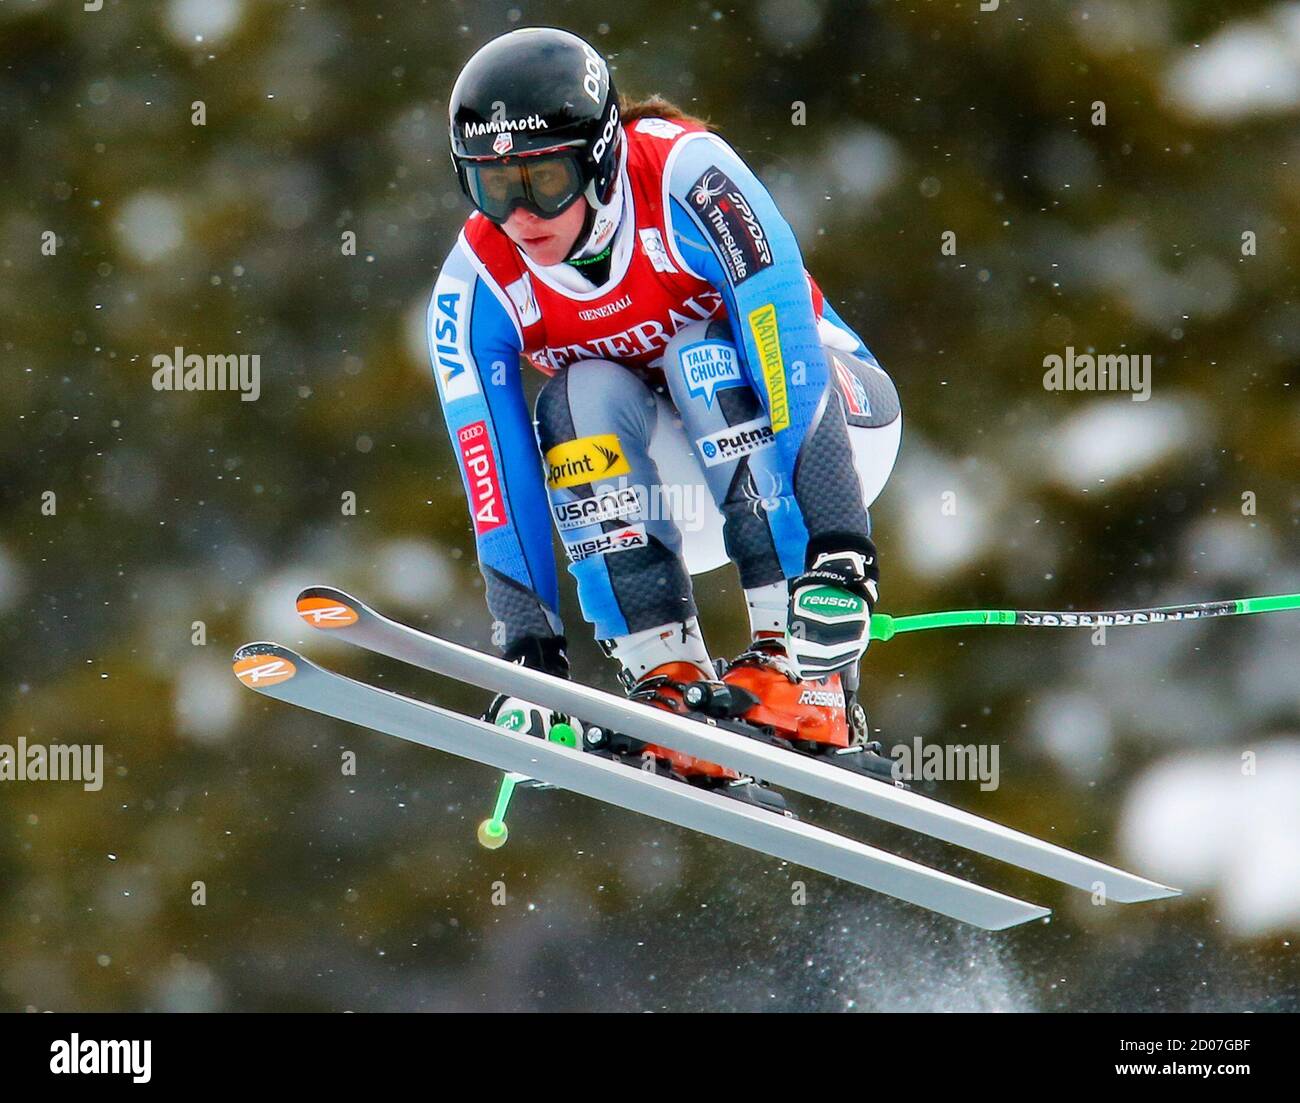 Stacey Cook aus den USA nimmt beim alpinen Skisport-Training für die Women's World Cup Downhill in Lake Louise, Alberta, am 29. November 2012 Luft auf. REUTERS/Mike Blake (KANADA - Tags: SKIFAHREN) Stockfoto